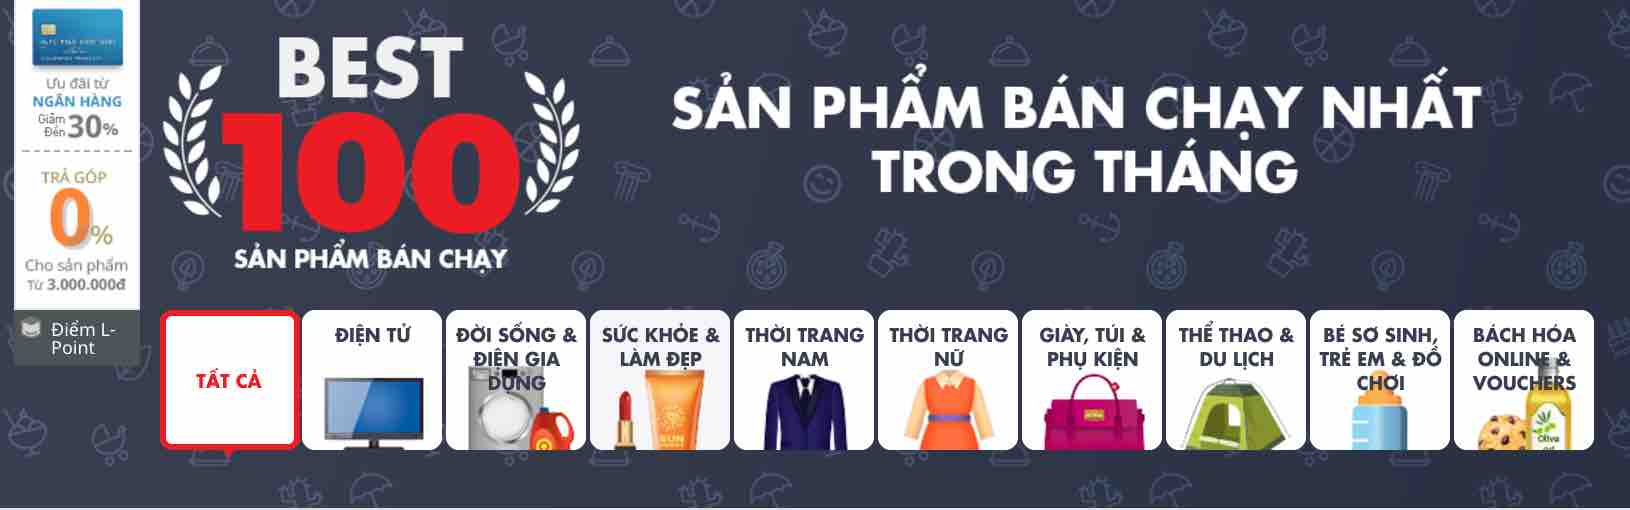 100 san pham ban chay lotte